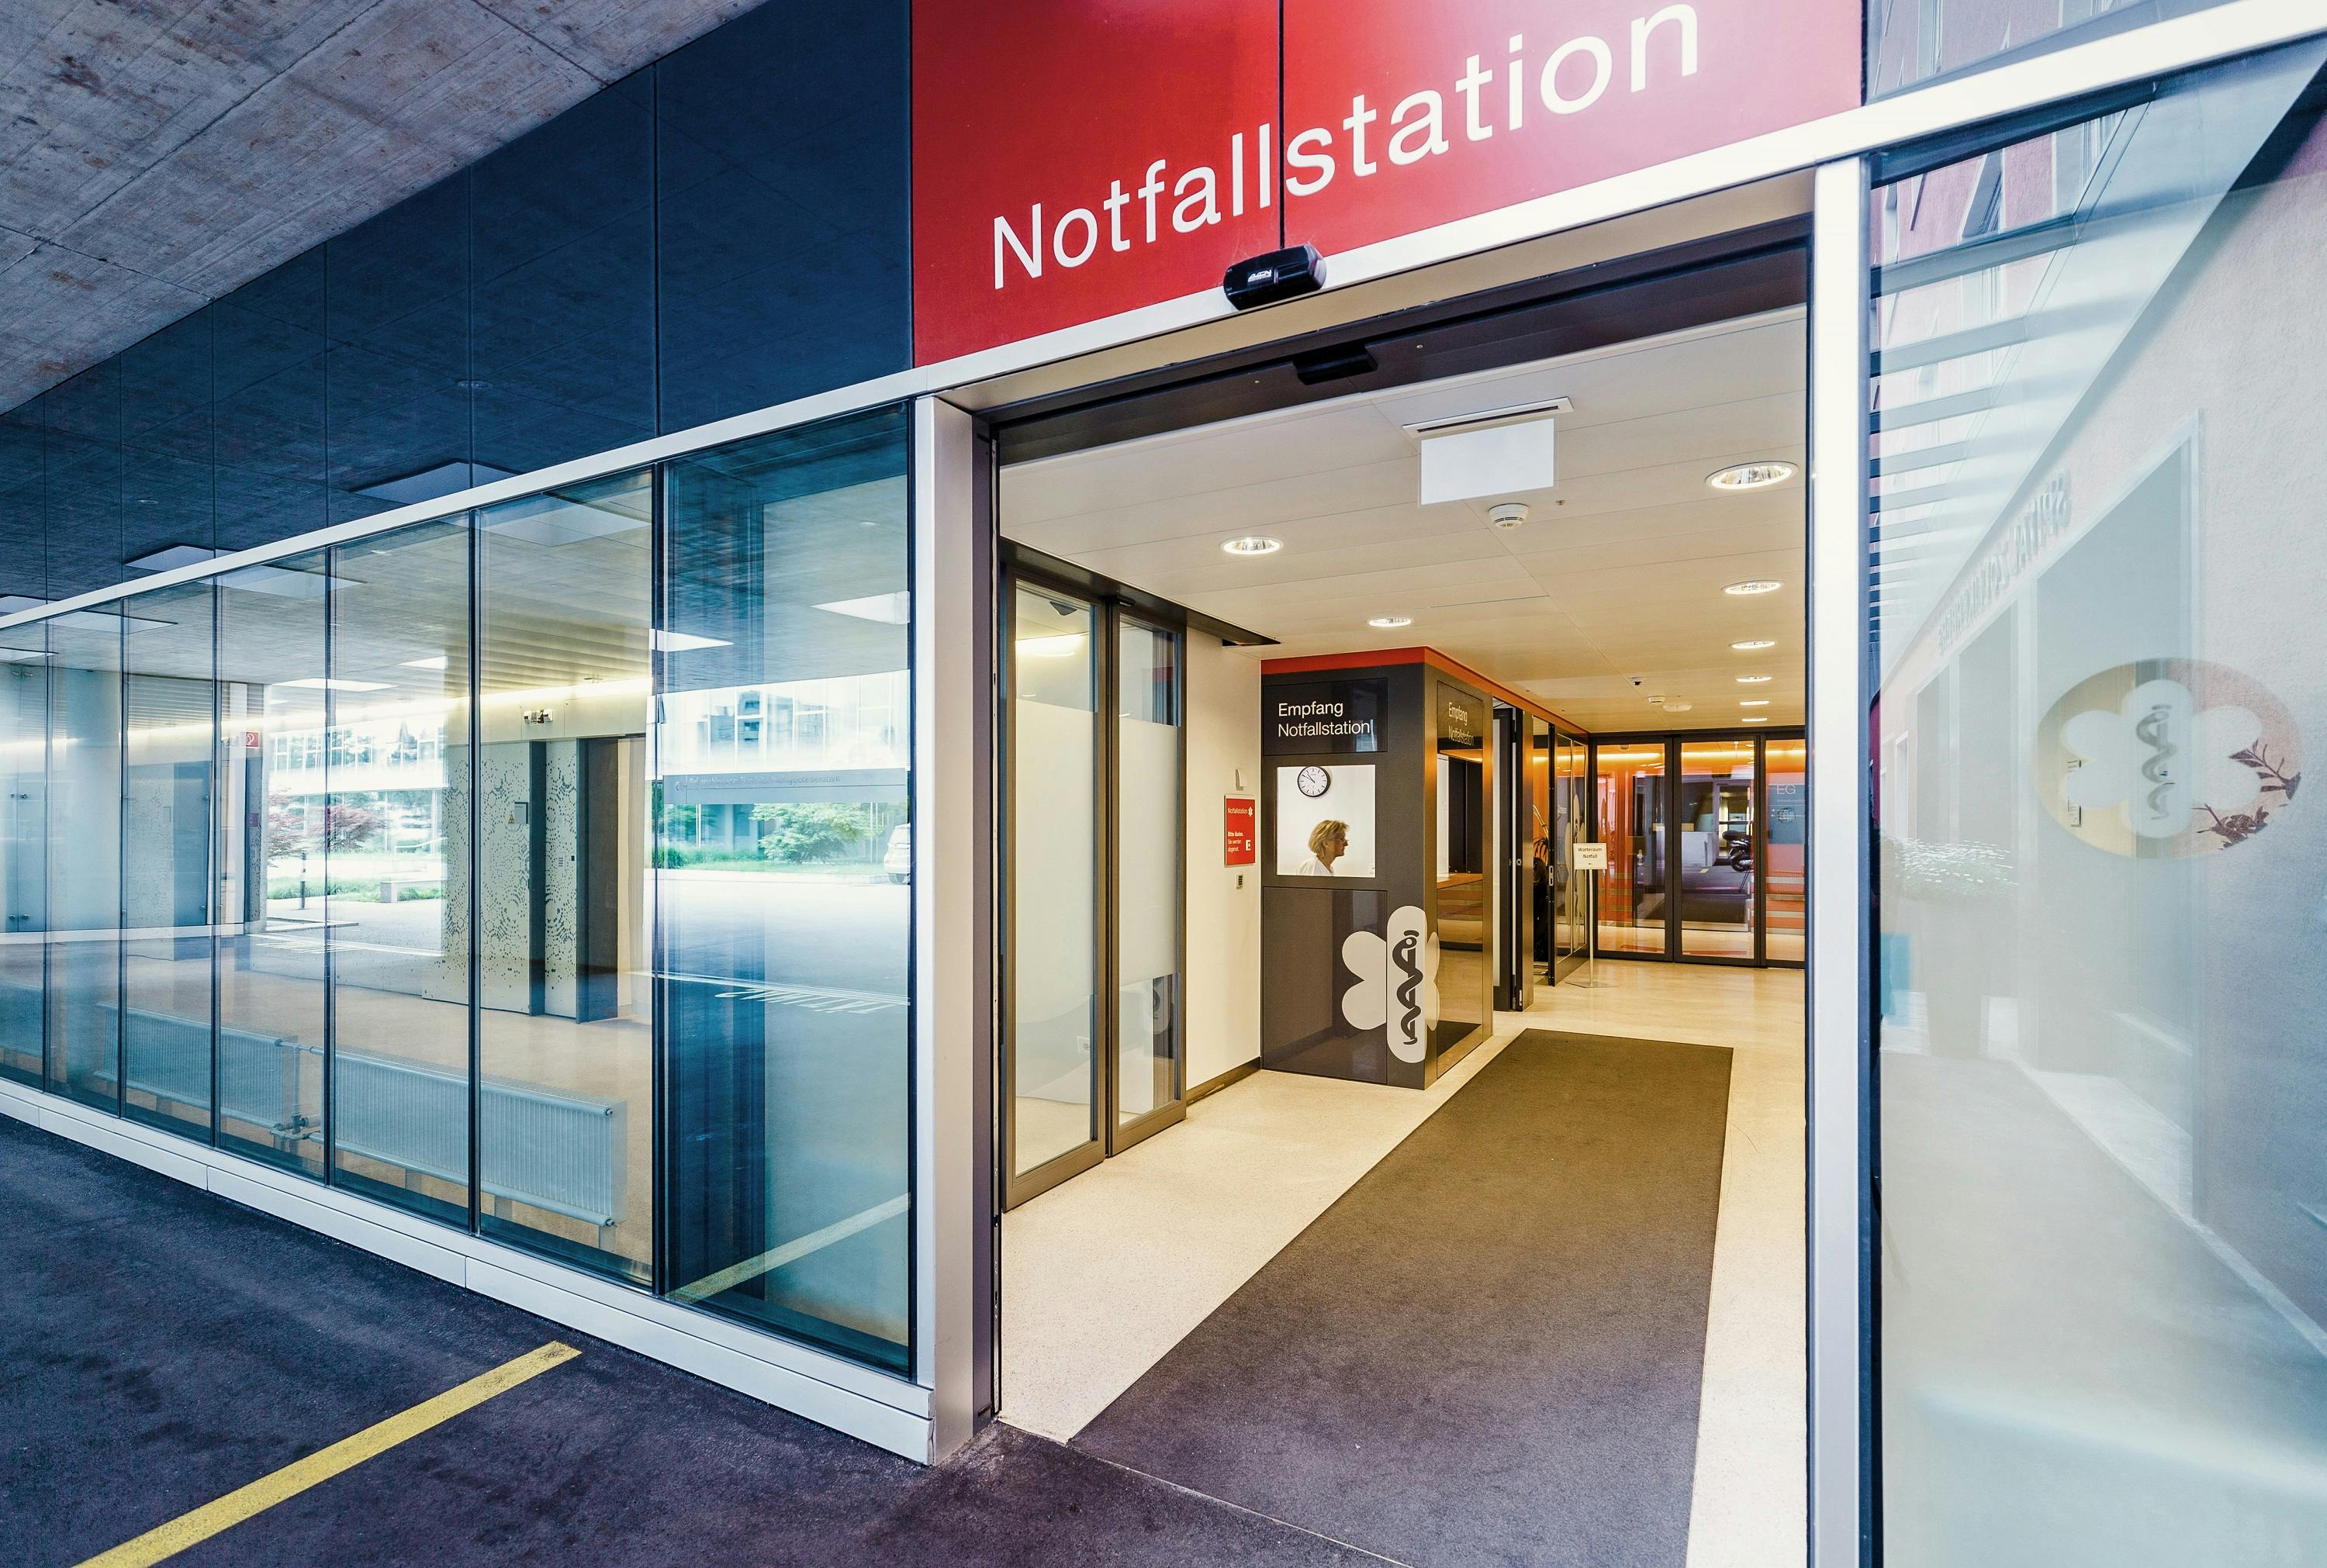 Eingang zur Notfallstation eines Krankenhauses mit geöffneten Glastüren und rotem Schild.